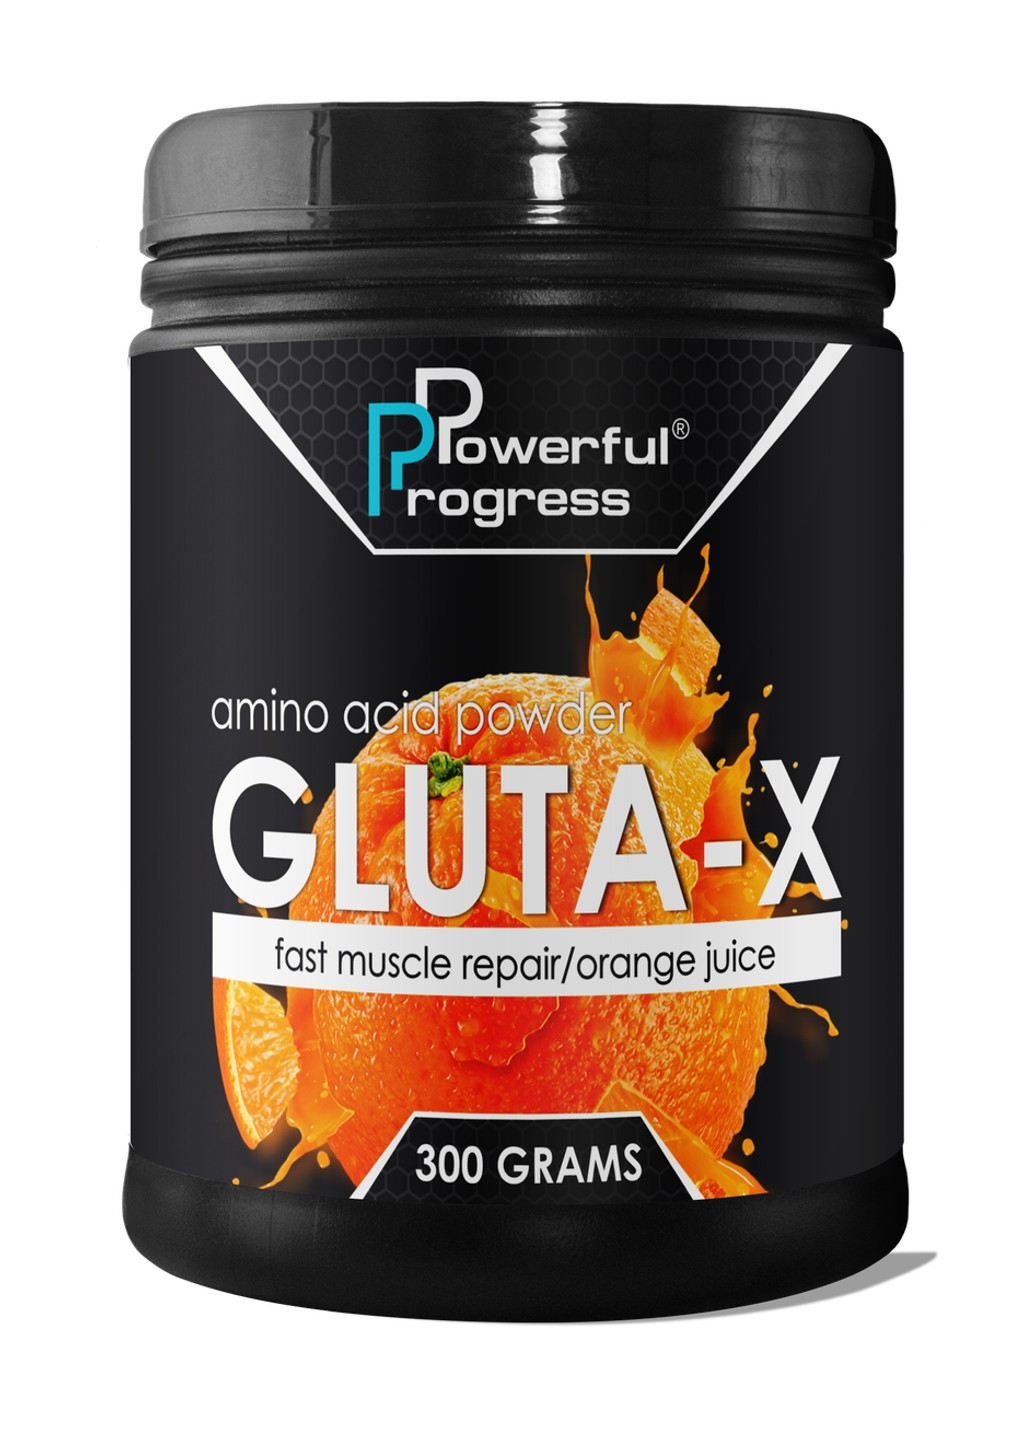 Глютамин Gluta-X (300 г) поверфул прогресс strawberry mix Powerful Progress (255363493)